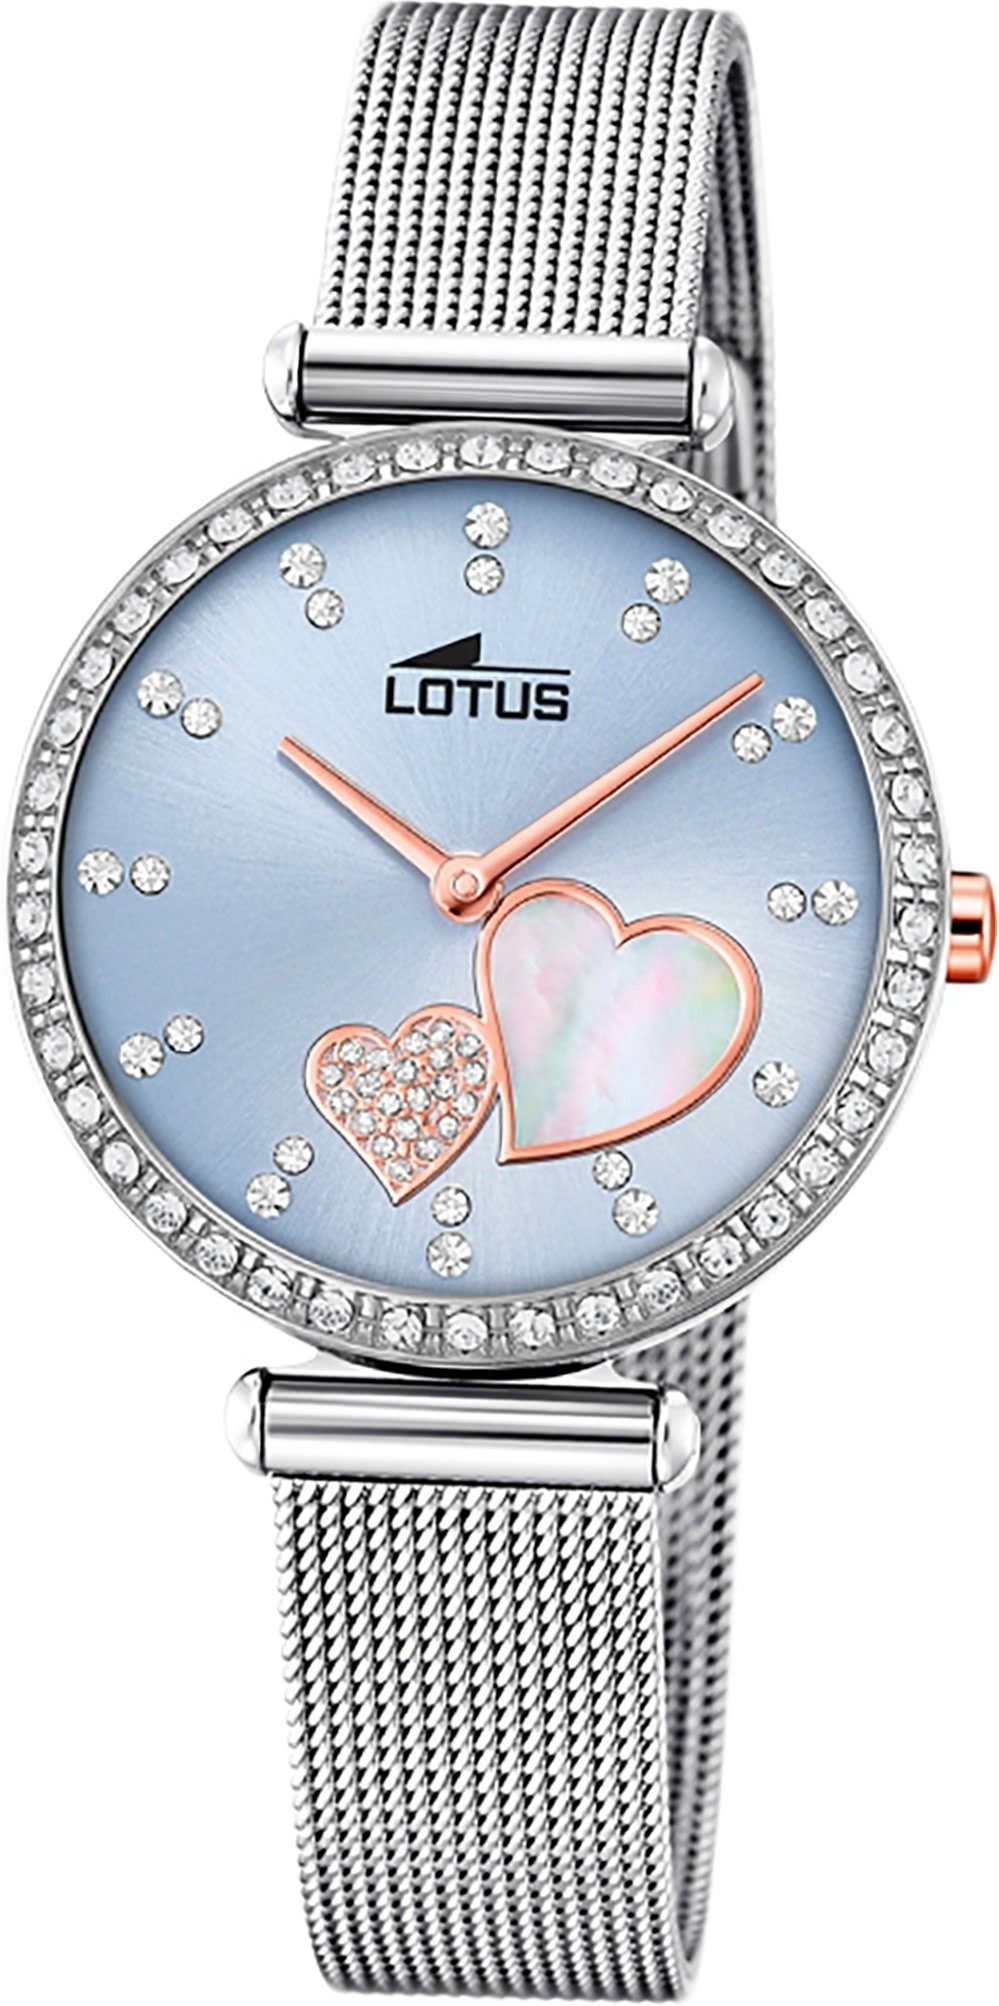 Lotus Quarzuhr LOTUS Edelstahl Damen Uhr 18616/2, Damenuhr mit Edelstahlarmband, rundes Gehäuse, klein (ca. 29mm), Fashi